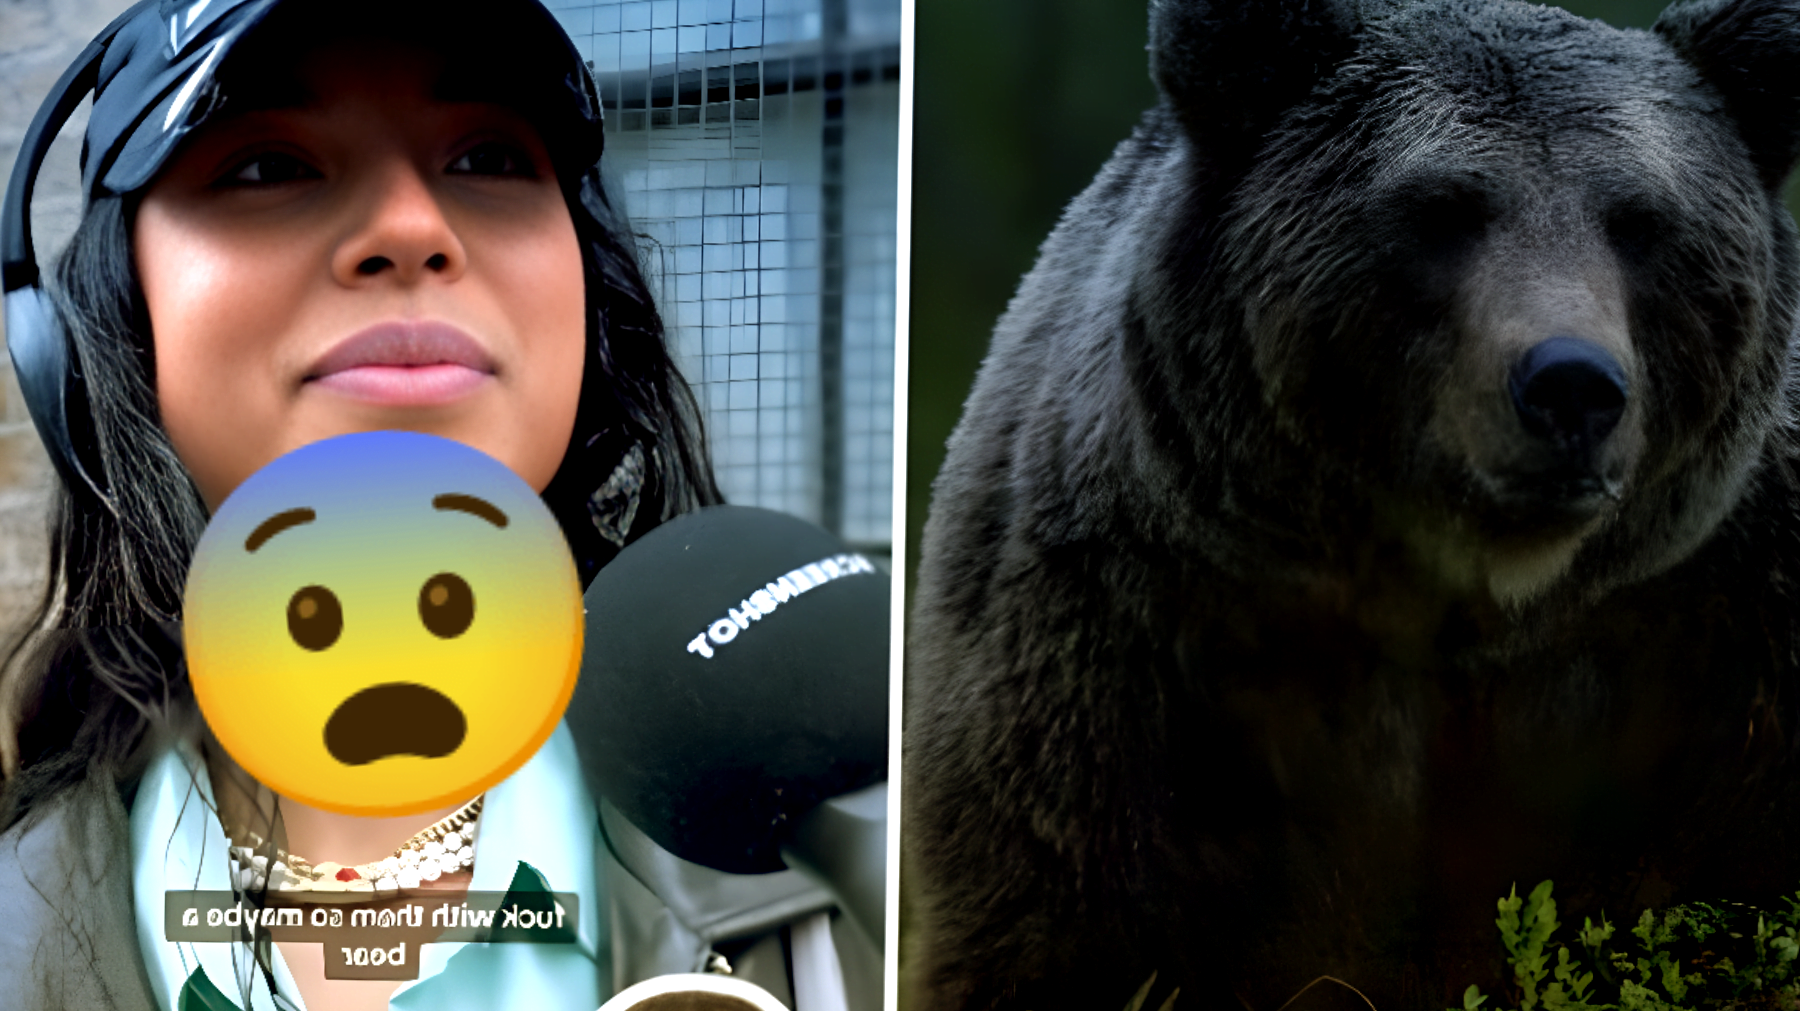 Le donne scelgono tra uomo e orso su TikTok: la risposta che ha acceso una polemica accesissima!